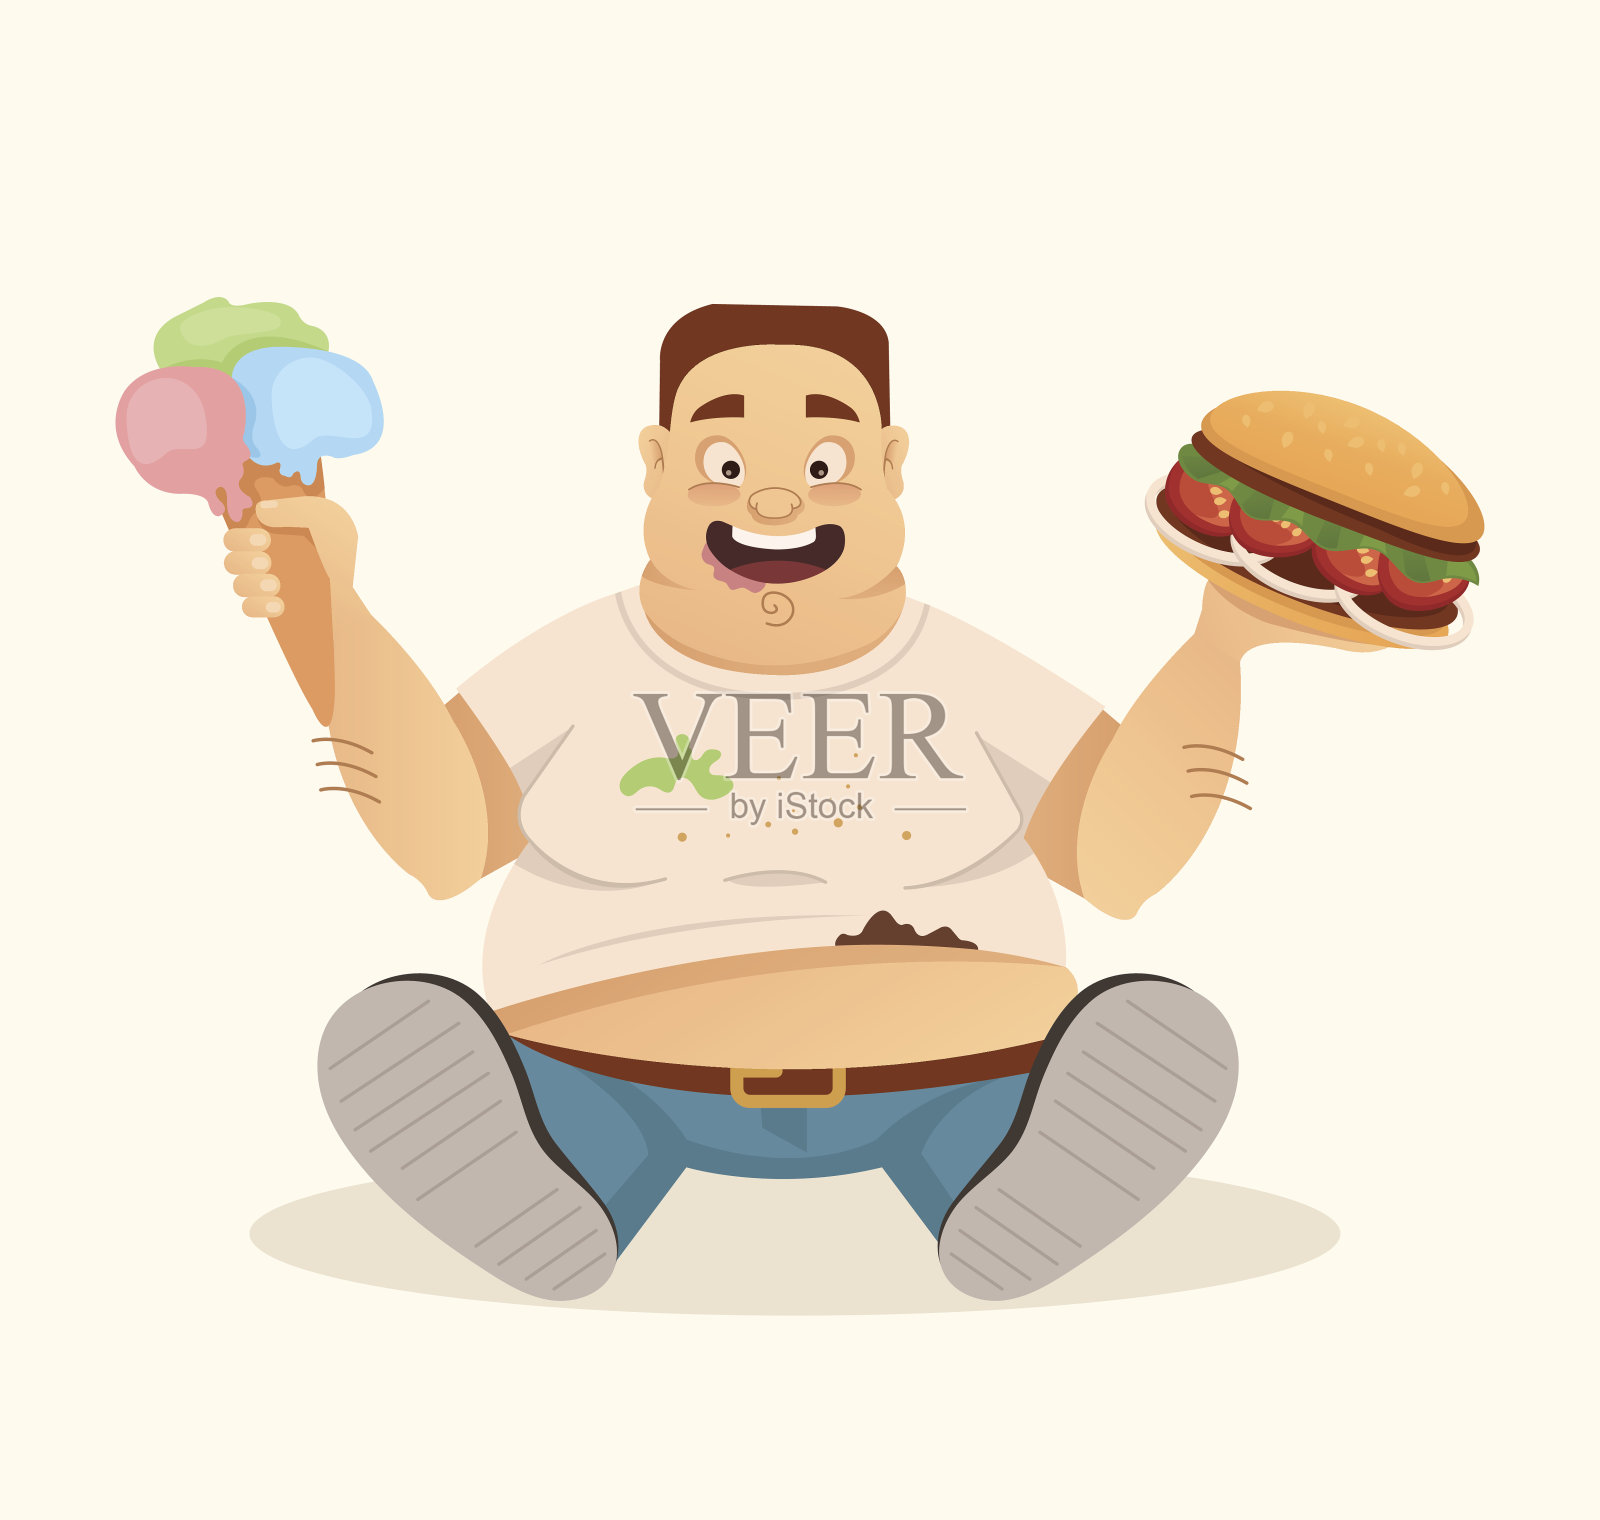 大胖子快乐微笑的人性格吉祥物吃汉堡包和冰淇淋快餐设计元素图片